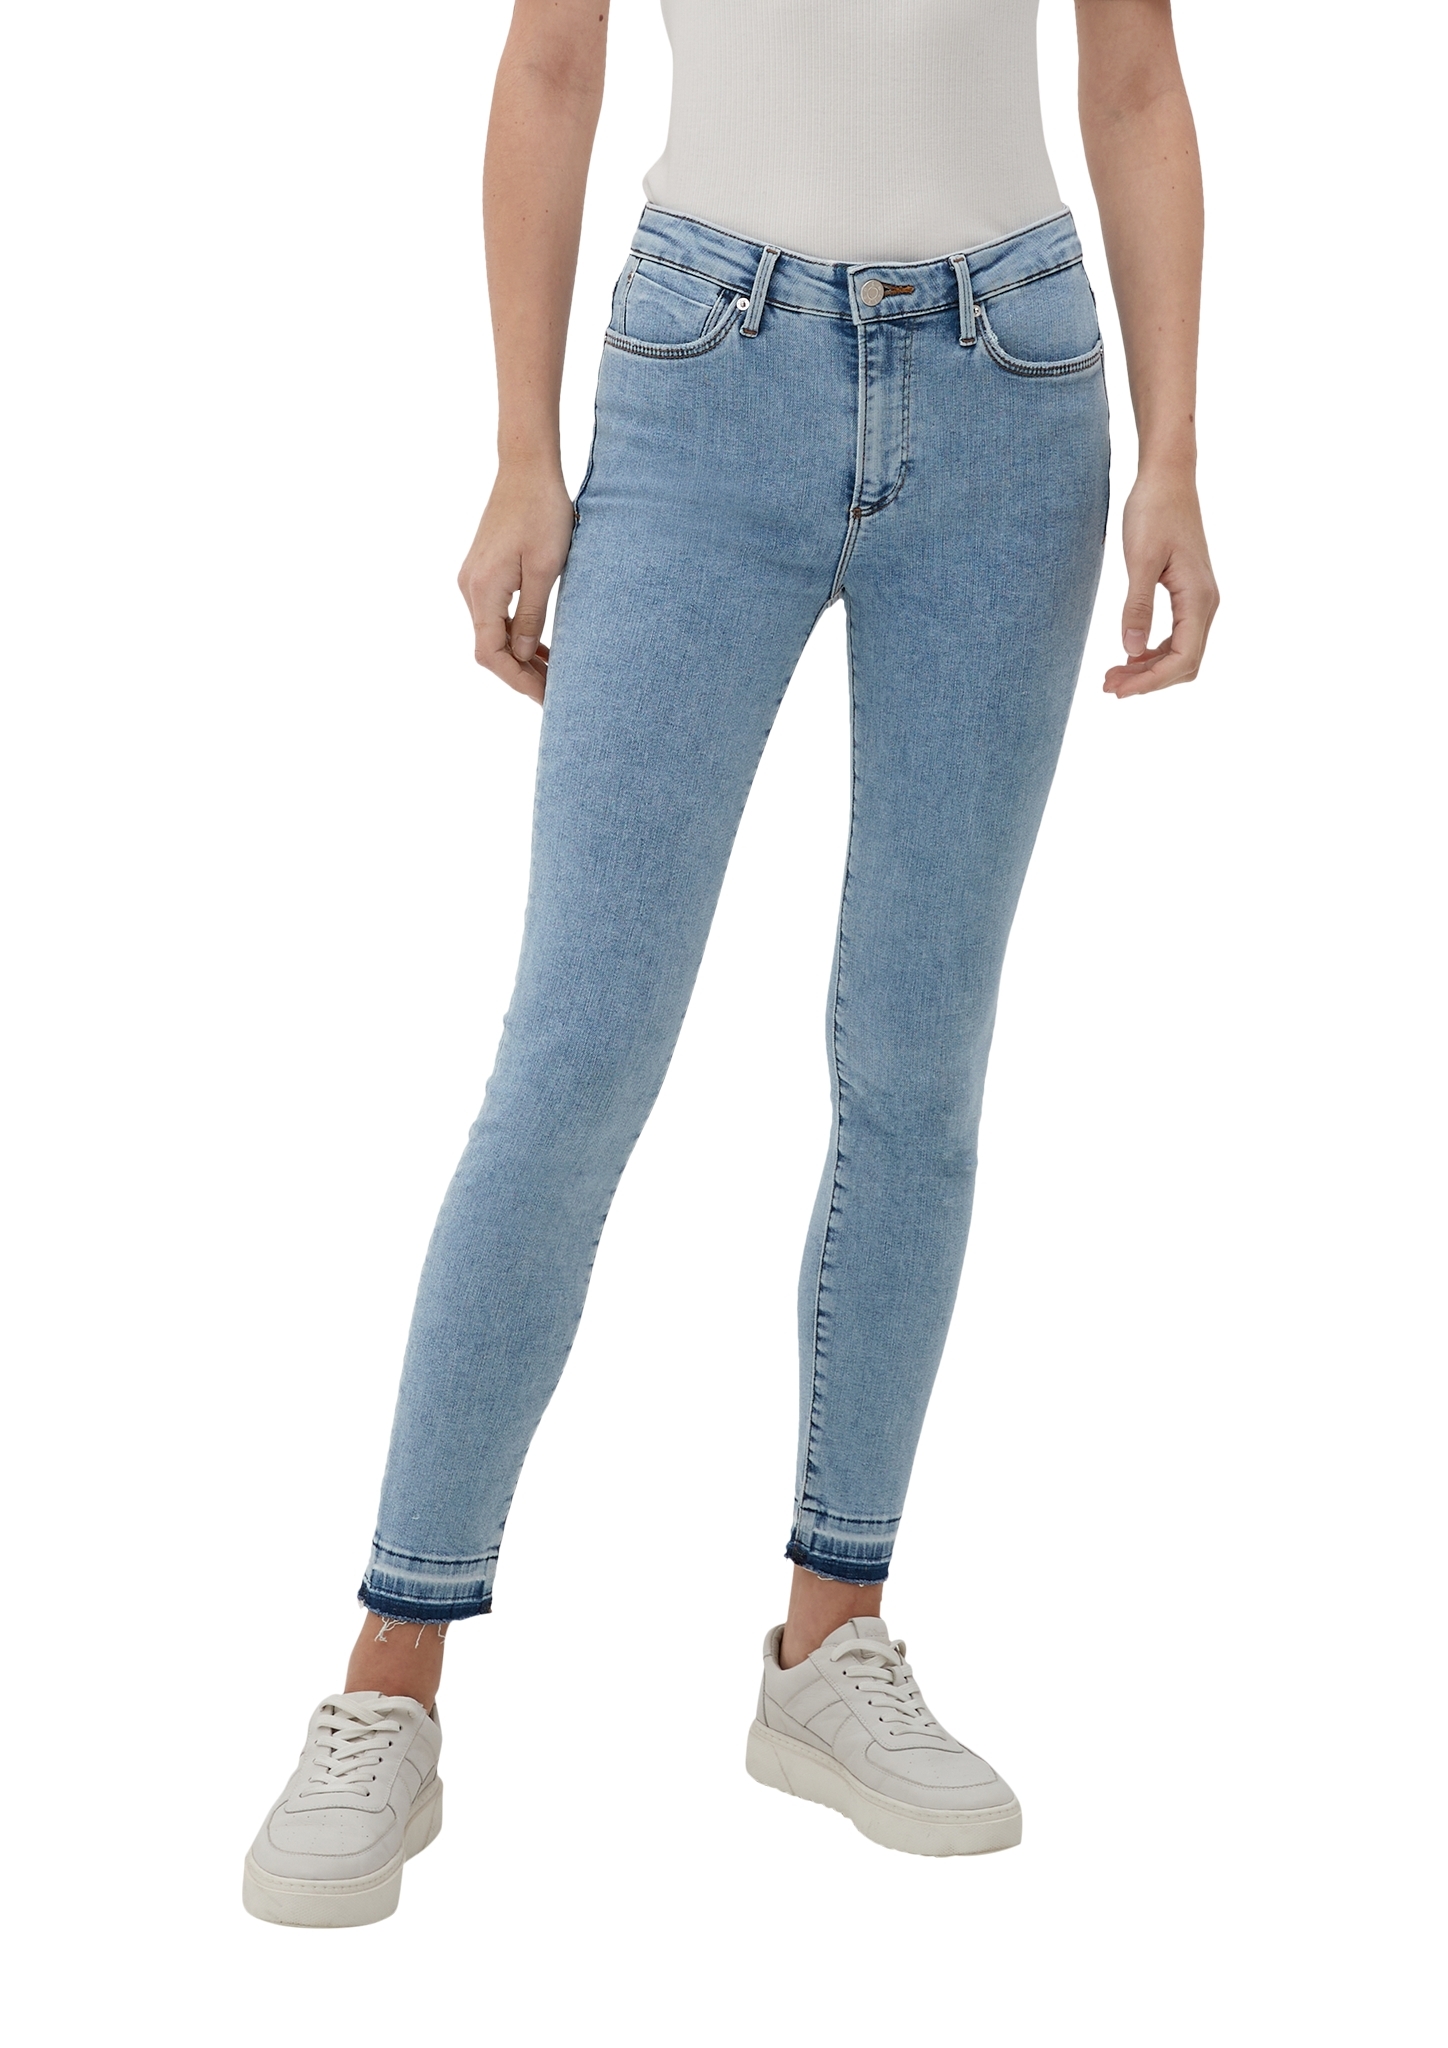 S.OLIVER Jeans-Hose Skinny 10706916